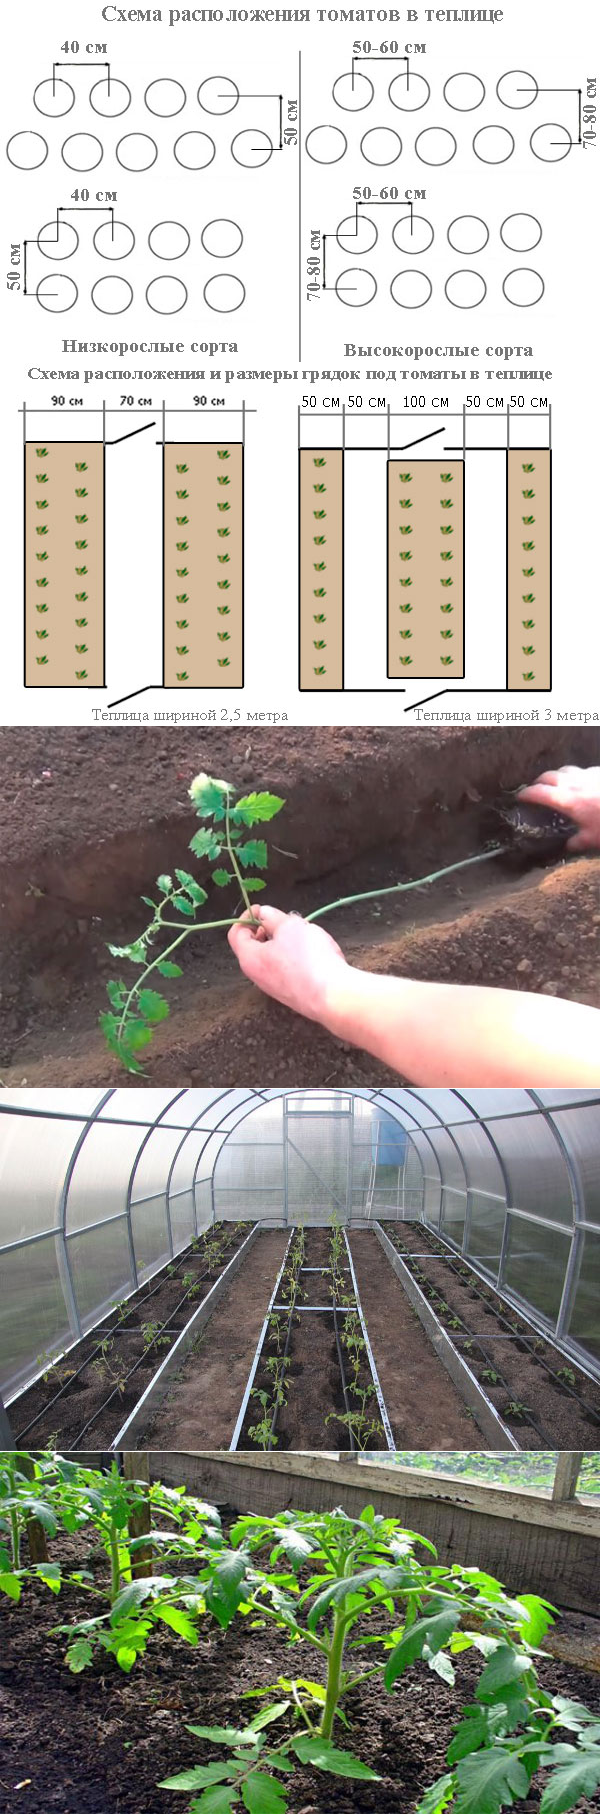 Схема посадки томатов в теплице: на каком расстоянии сажать помидоры в теплице для богатого урожая.